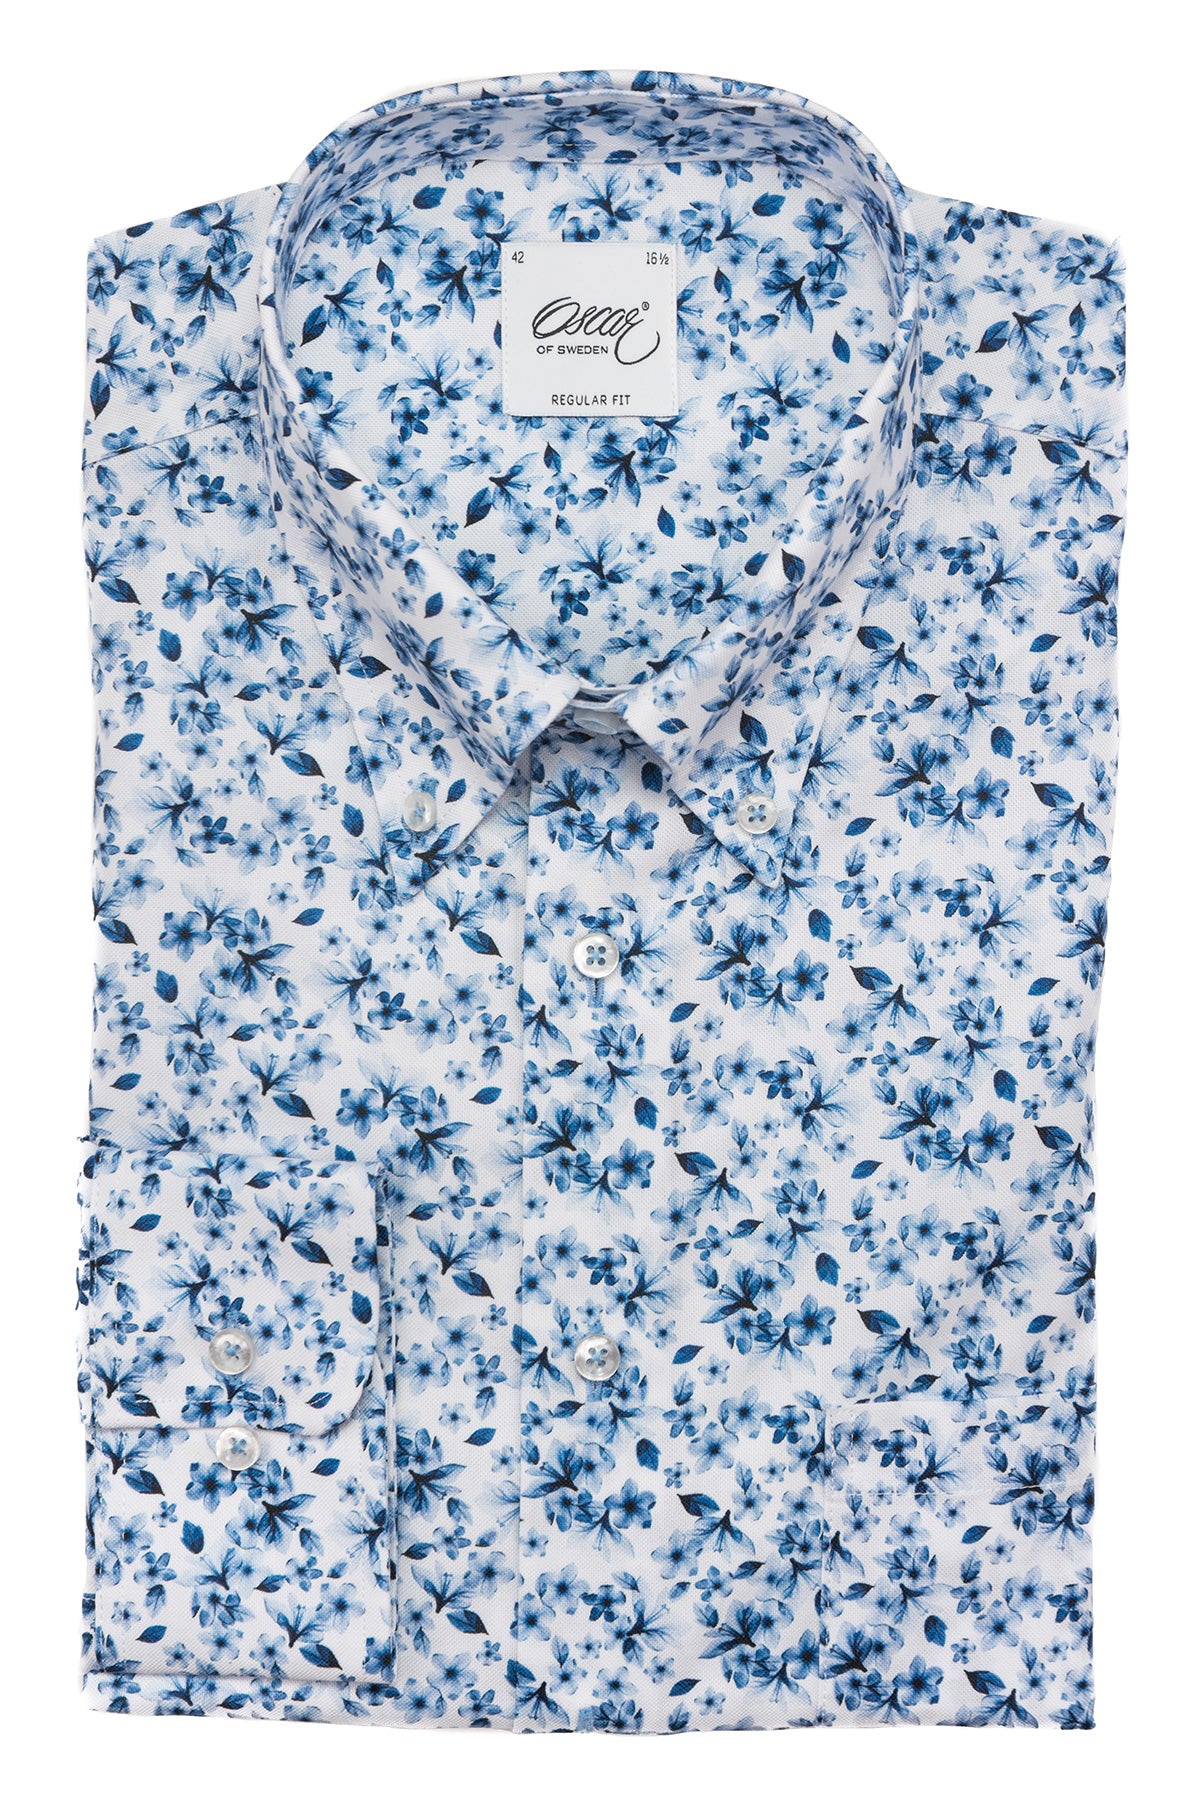 Blue flower printed button down regular fit shirt